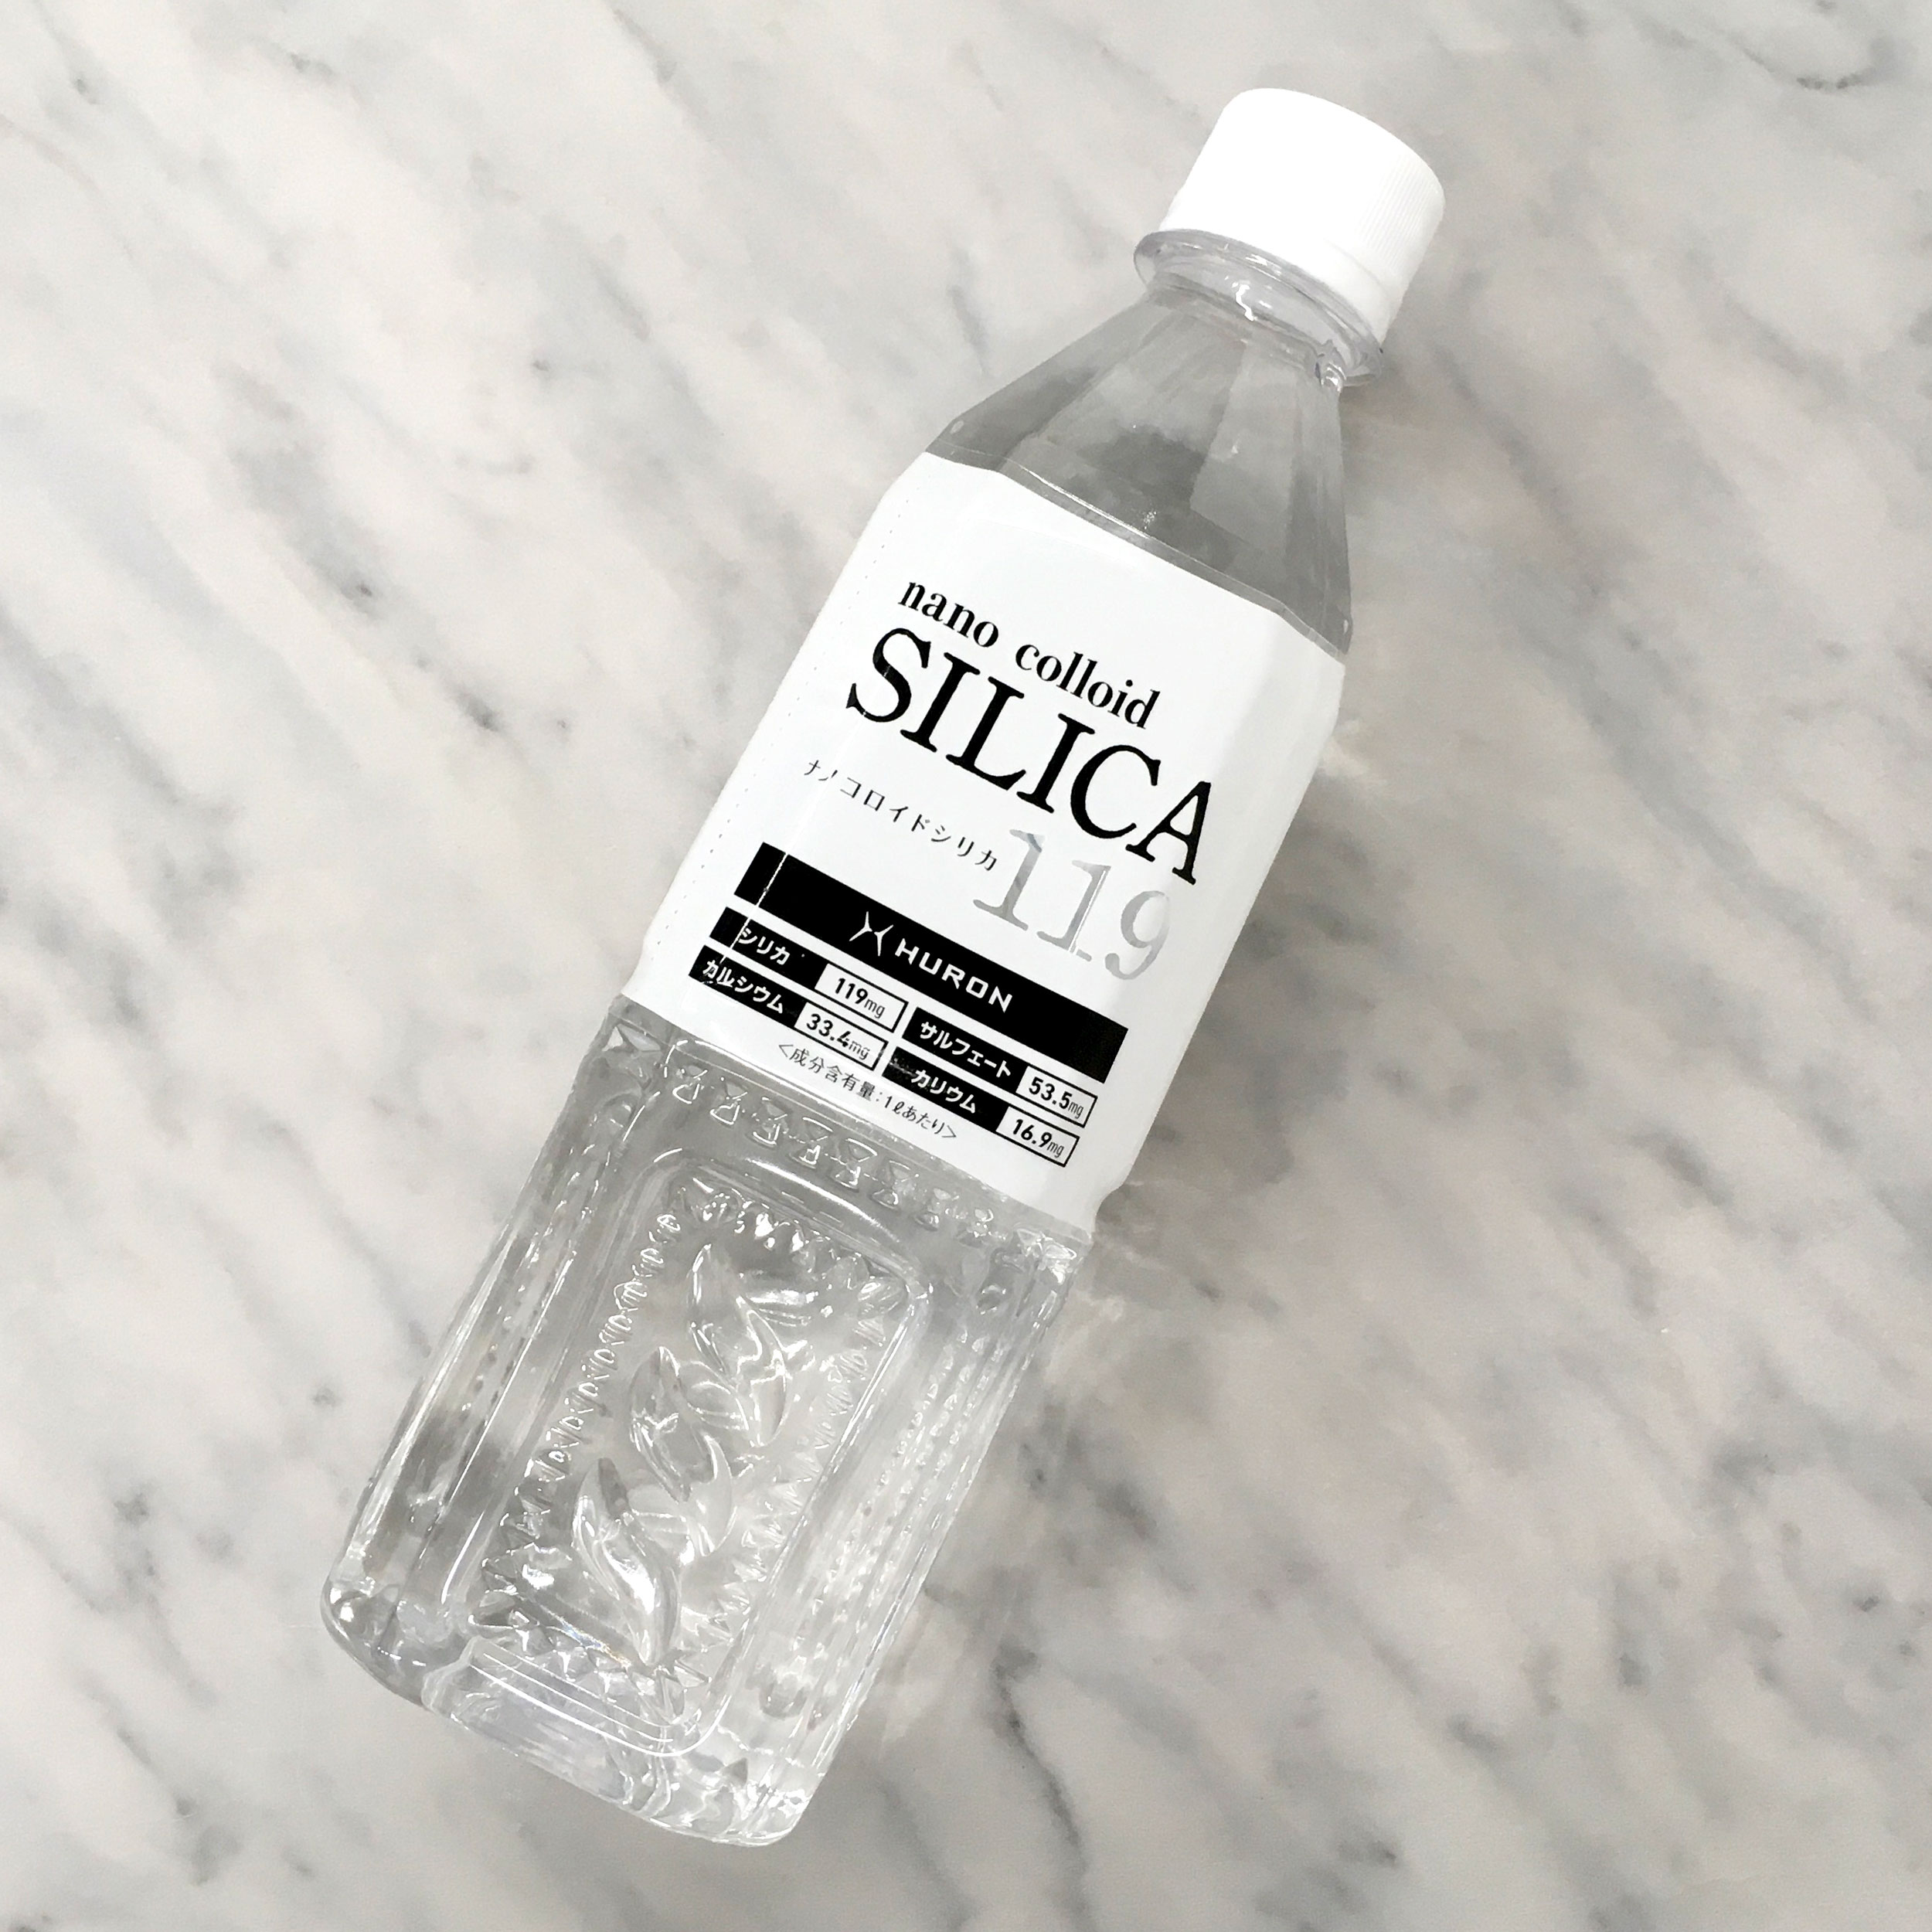 ナノコロイドシリカ水「シリカ119」販売開始